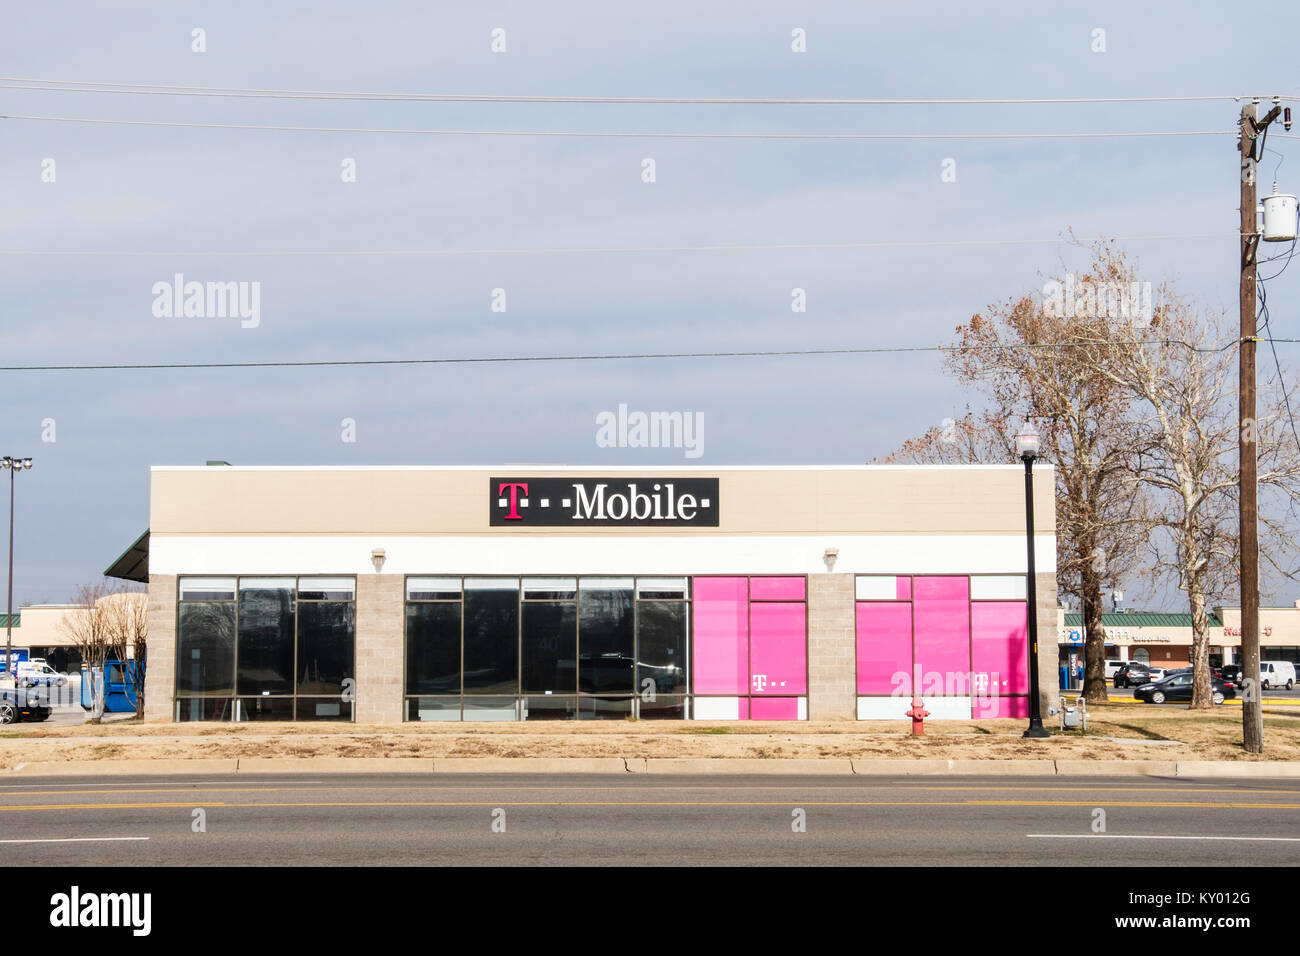 T de l'extérieur d'un magasin mobile offrant des téléphones mobiles et des forfaits de téléphonie cellulaire. Oklahoma City, Oklahoma, USA. Banque D'Images